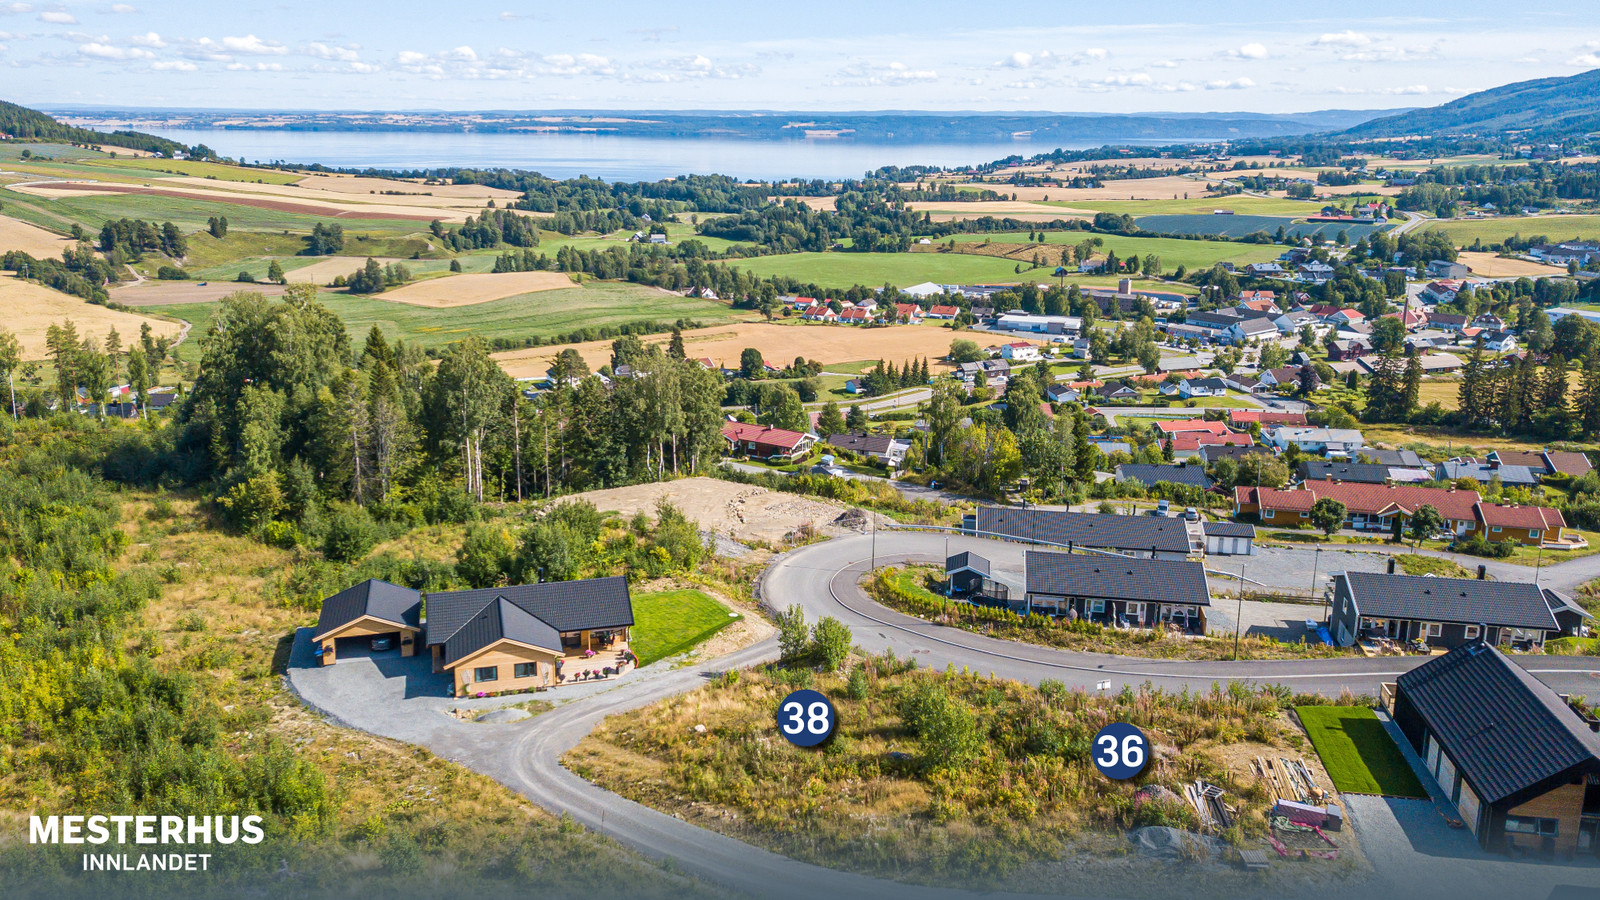 Velkommen til Høgdavegen 38 og 36 i Fossen-feltet på Skreia! Her kan vi bygge ditt drømmehus!